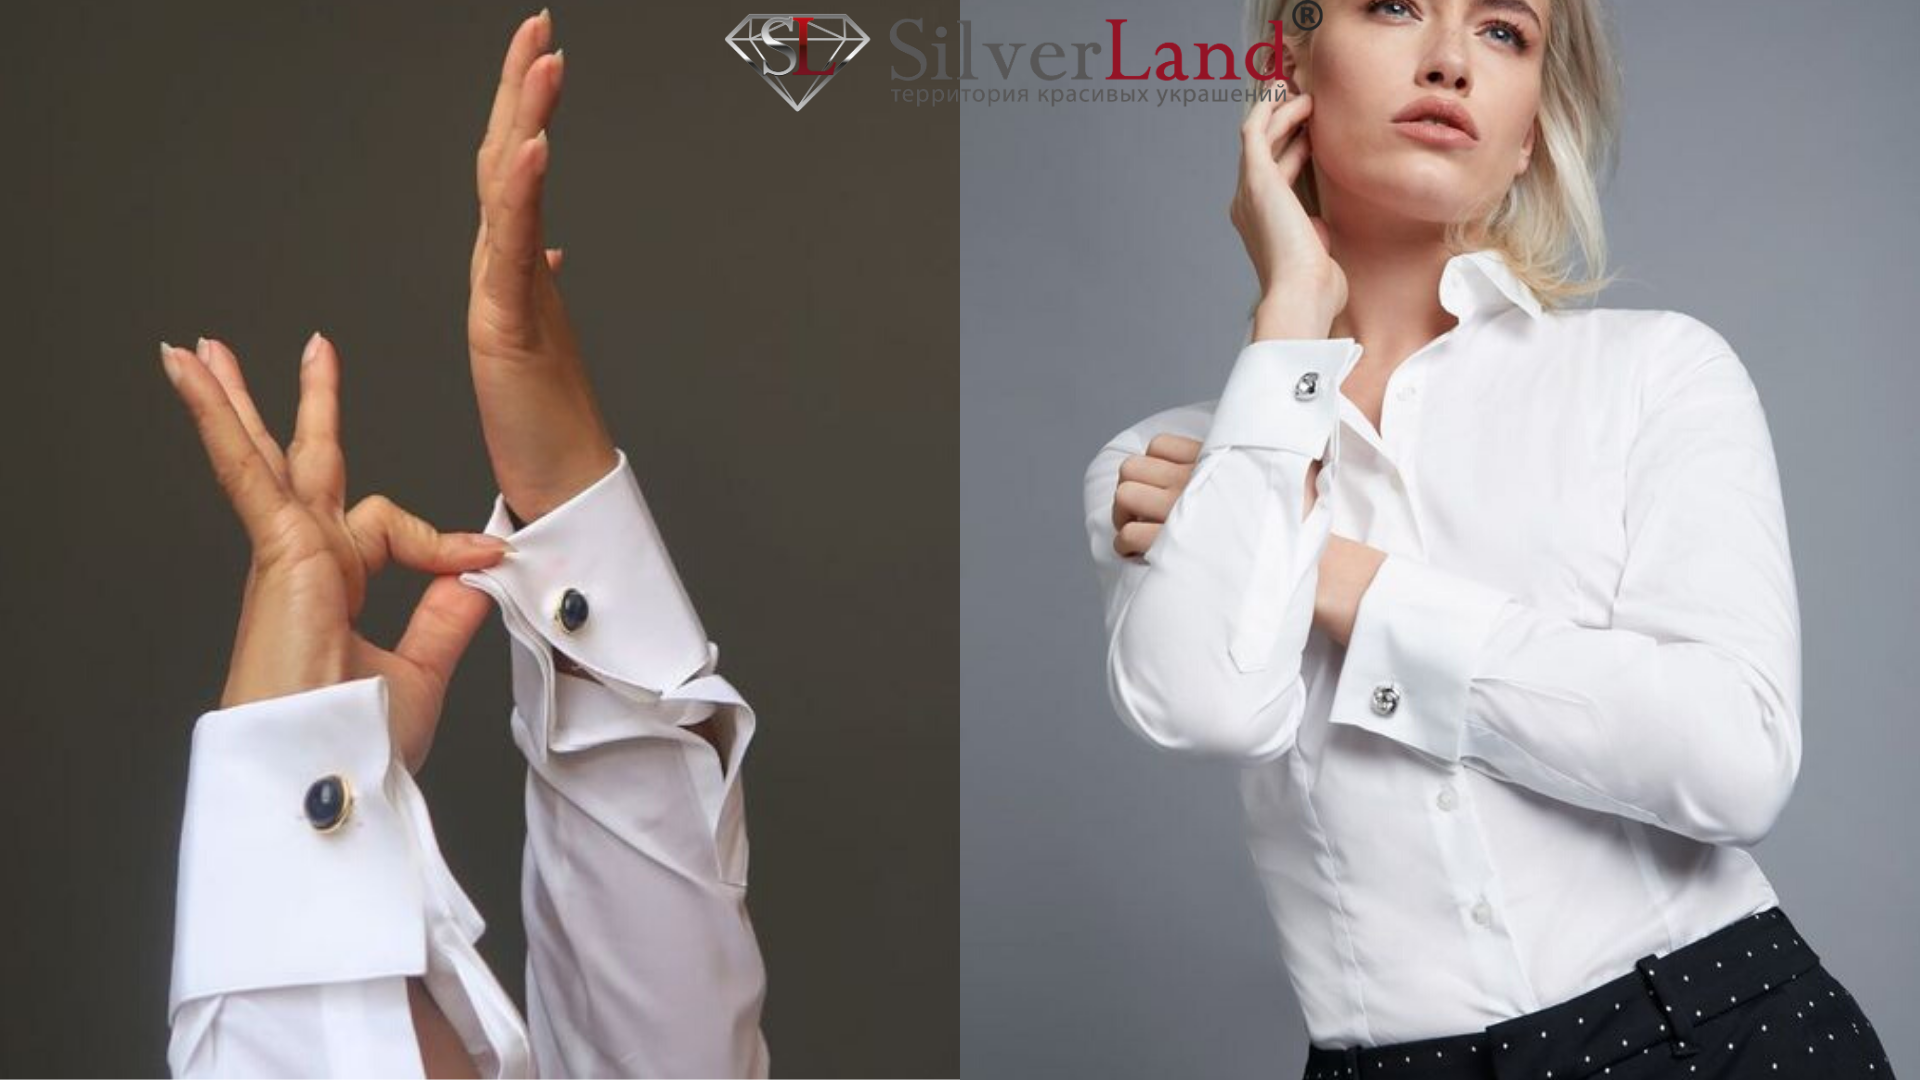 картинки серебряные запонки на девушке на рубашке в Сильверленд